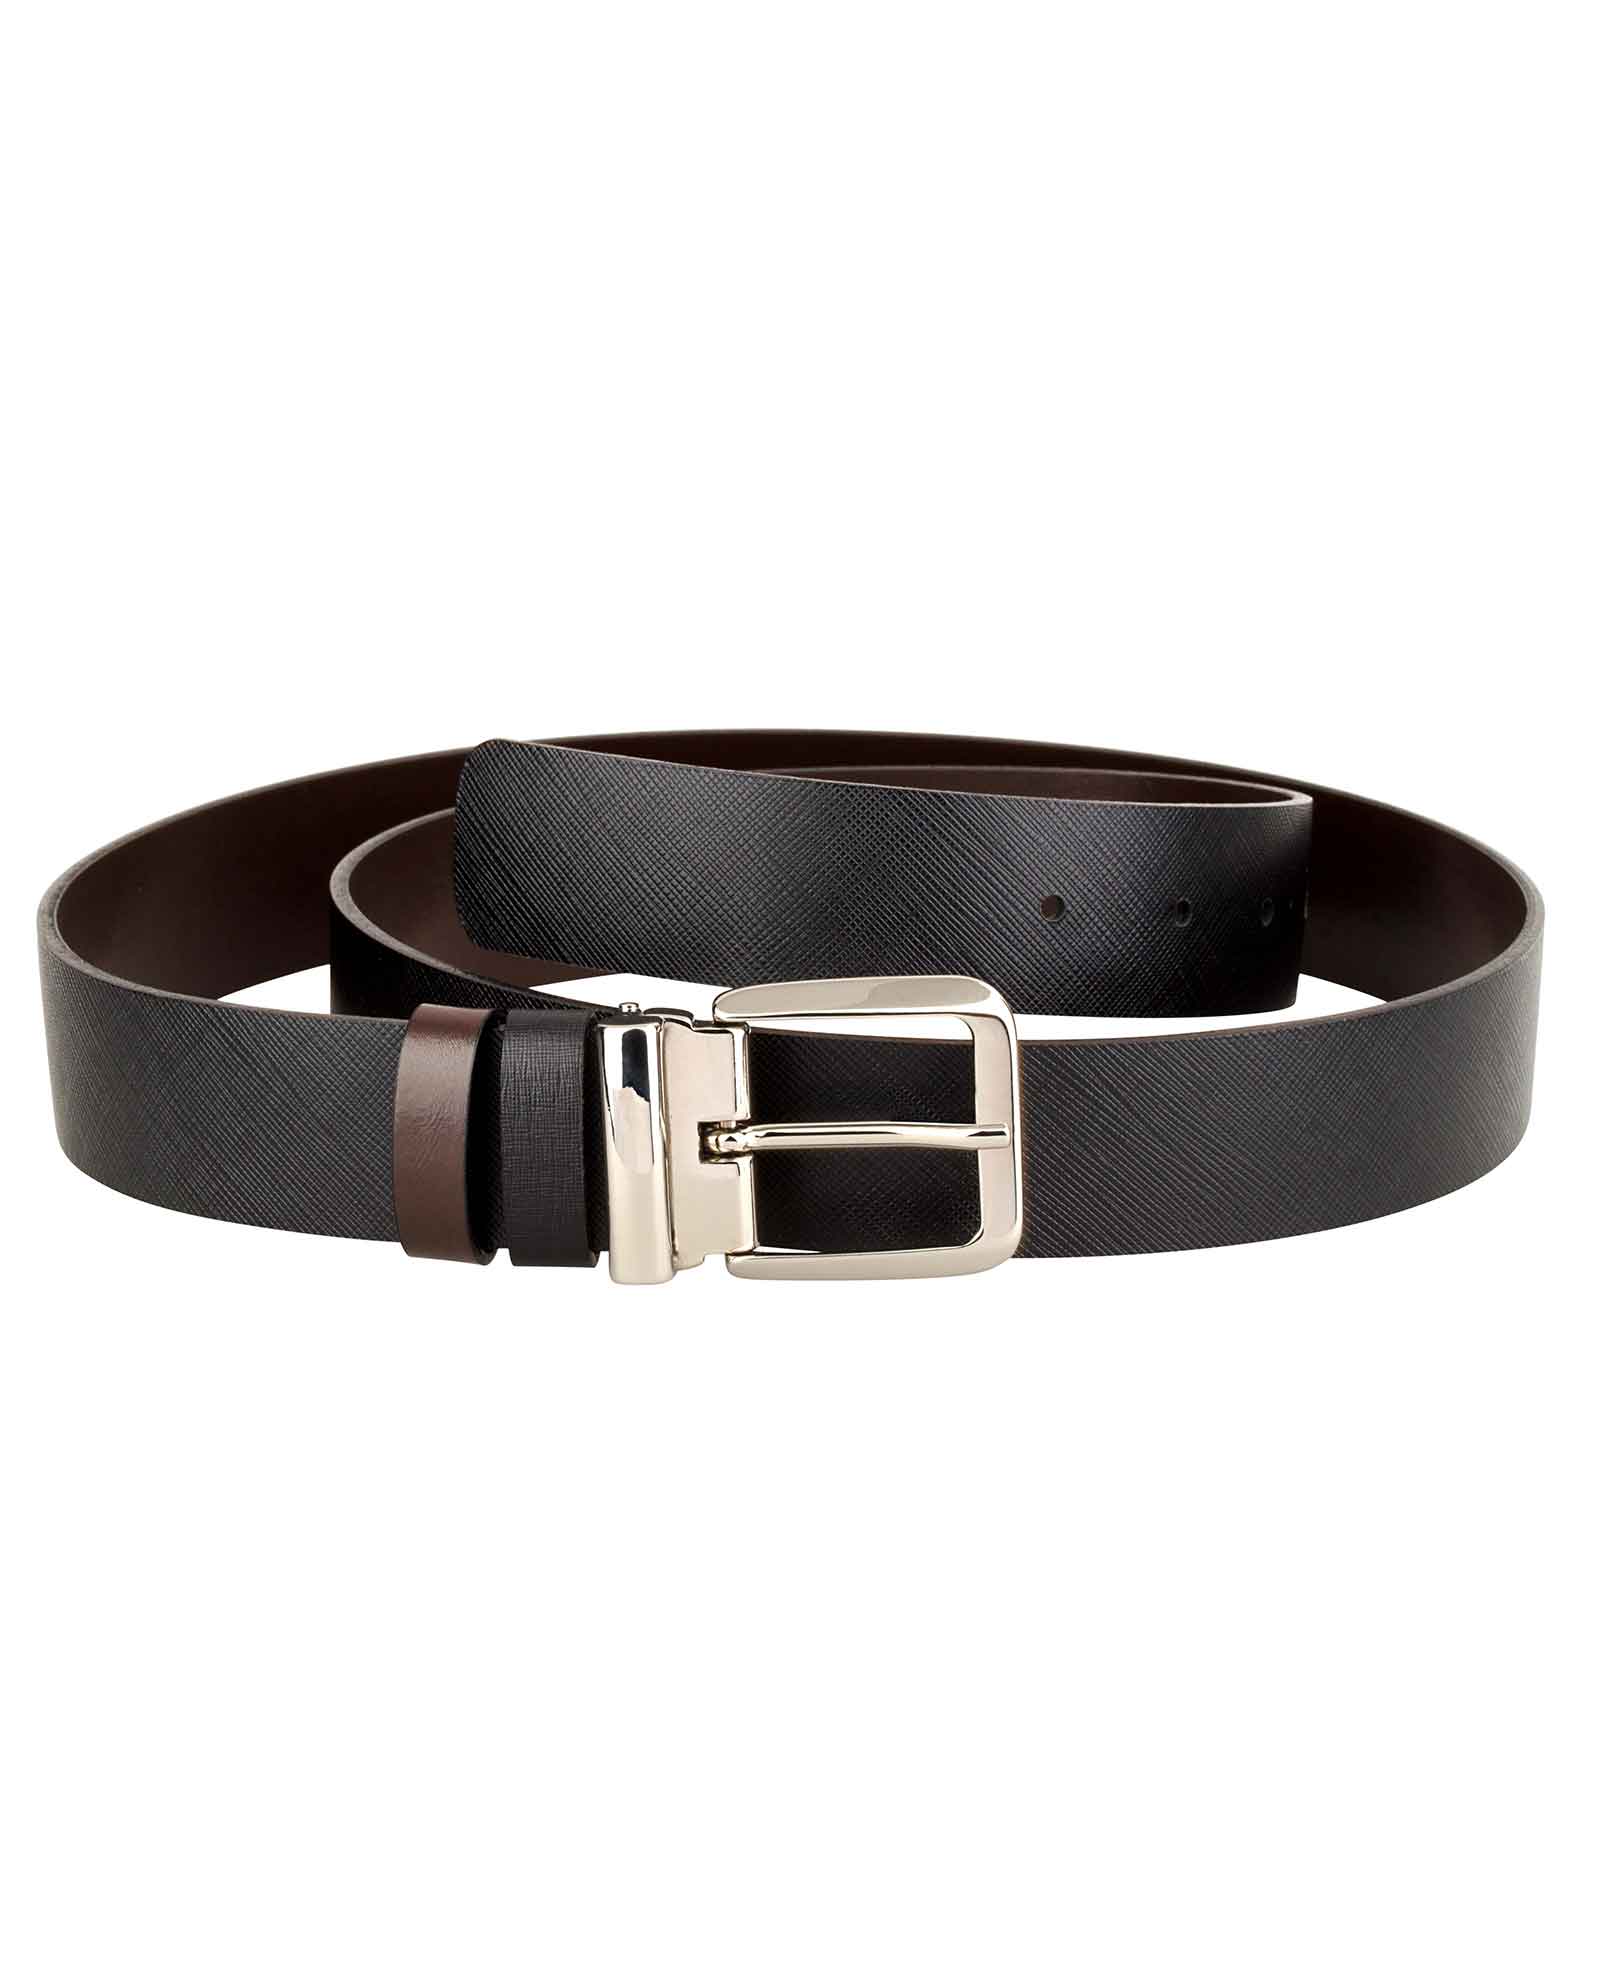 Buy Men's Saffiano Leather Belt | Reversible Black Brown | Capo Pelle